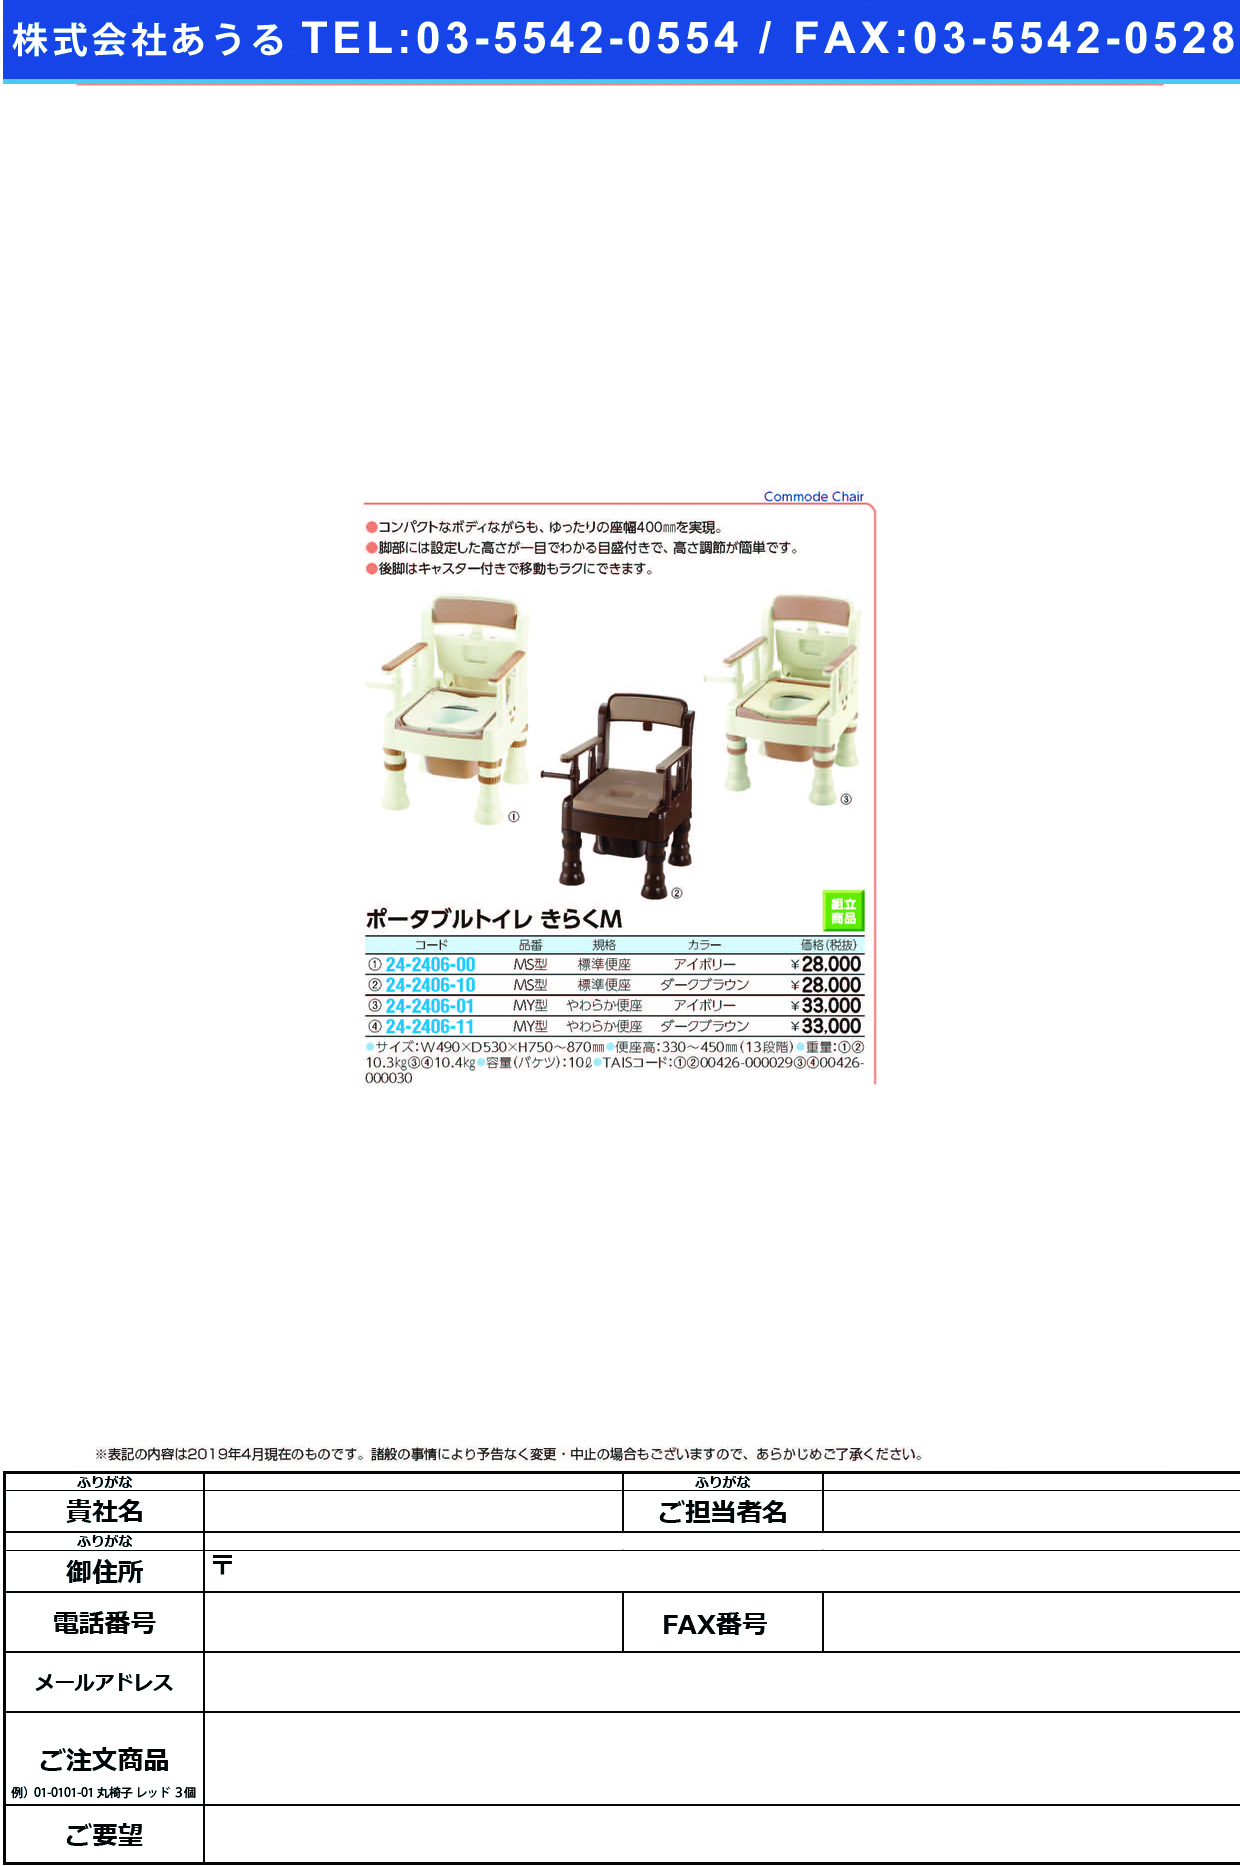 (24-2406-01)ポータブルトイレきらくＭＹ型 45611(ﾔﾜﾗｶ)ｱｲﾎﾞﾘｰ ﾎﾟｰﾀﾌﾞﾙﾄｲﾚｷﾗｸMYｶﾞﾀ(リッチェル)【1台単位】【2019年カタログ商品】